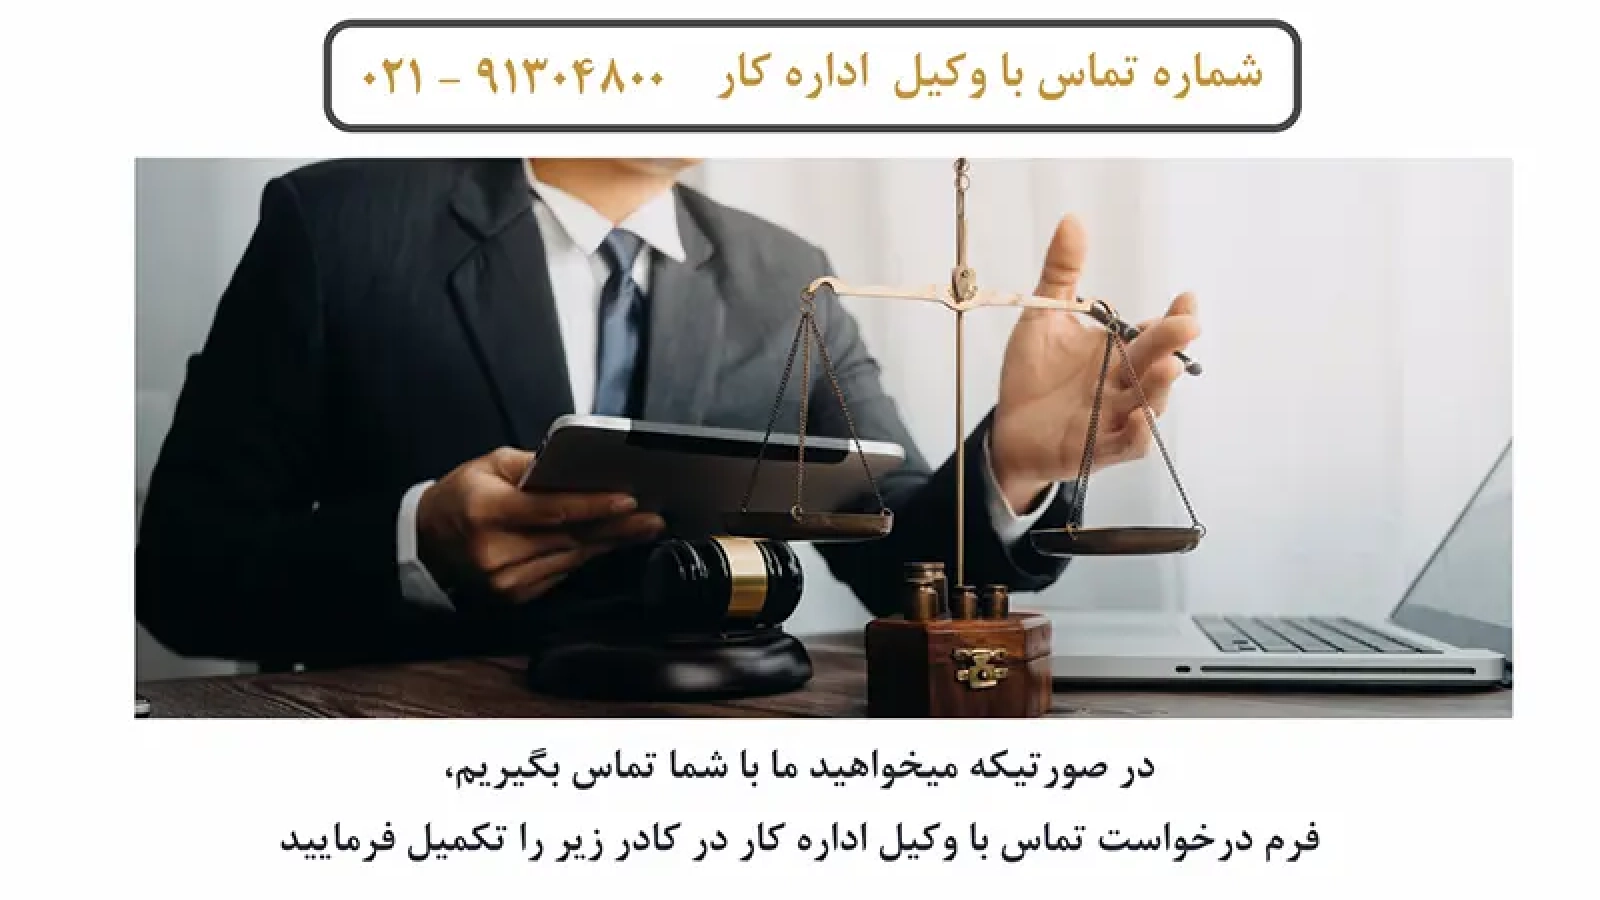 وکیل اداره کار در شهر تهران